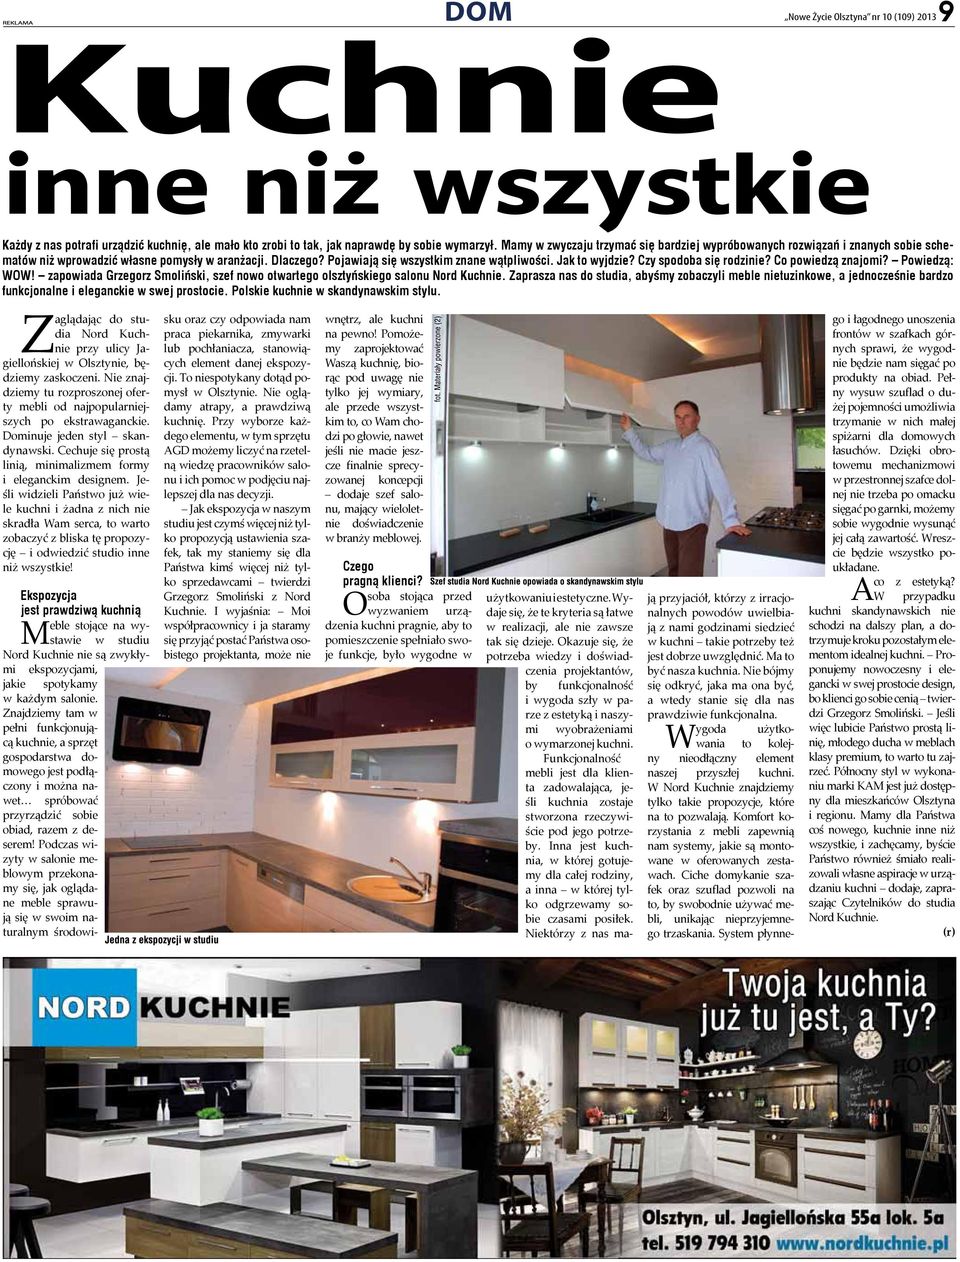 Czy spodoba się rodzinie? Co powiedzą znajomi? Powiedzą: WOW! zapowiada Grzegorz Smoliński, szef nowo otwartego olsztyńskiego salonu Nord Kuchnie.